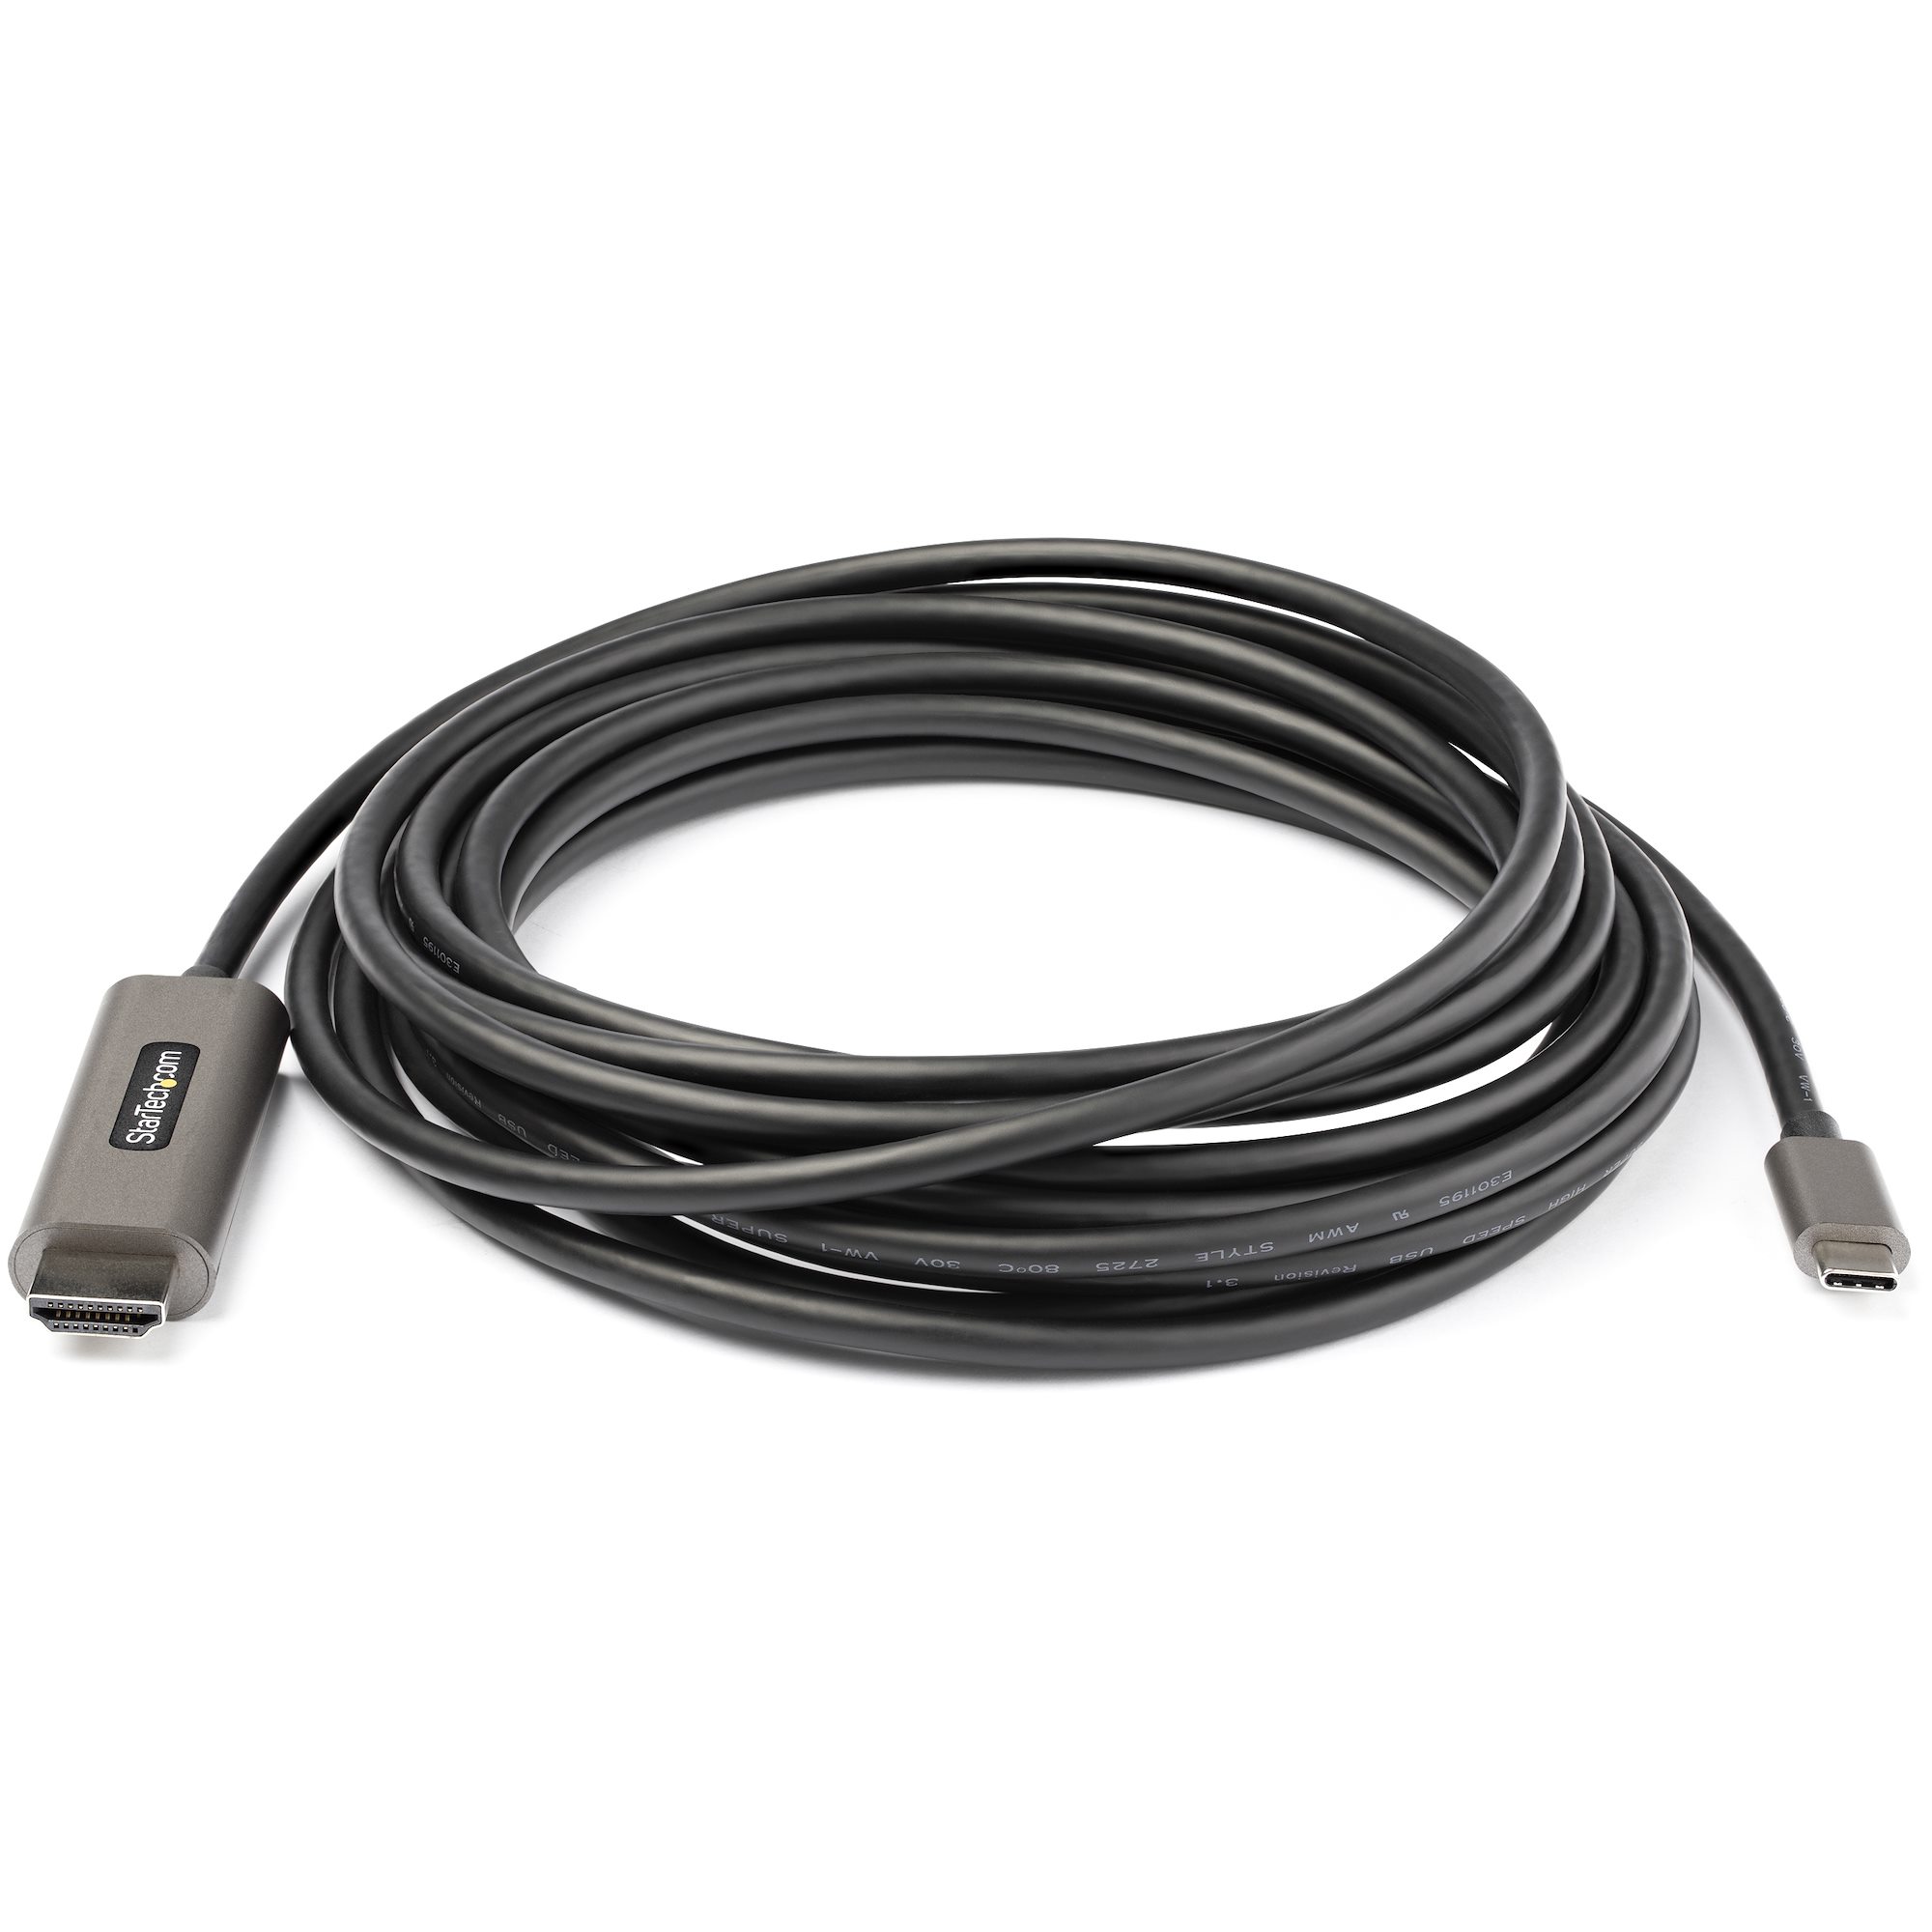 Uni Cable USB C Vers HDMI (4K@60Hz), Câble USB C Type C HDMI (Thunderbolt 3  Compatible) Pour MacBook Pro, IPad Pro, Surface Book 2, Dell XPS - Gris -  1,8 M